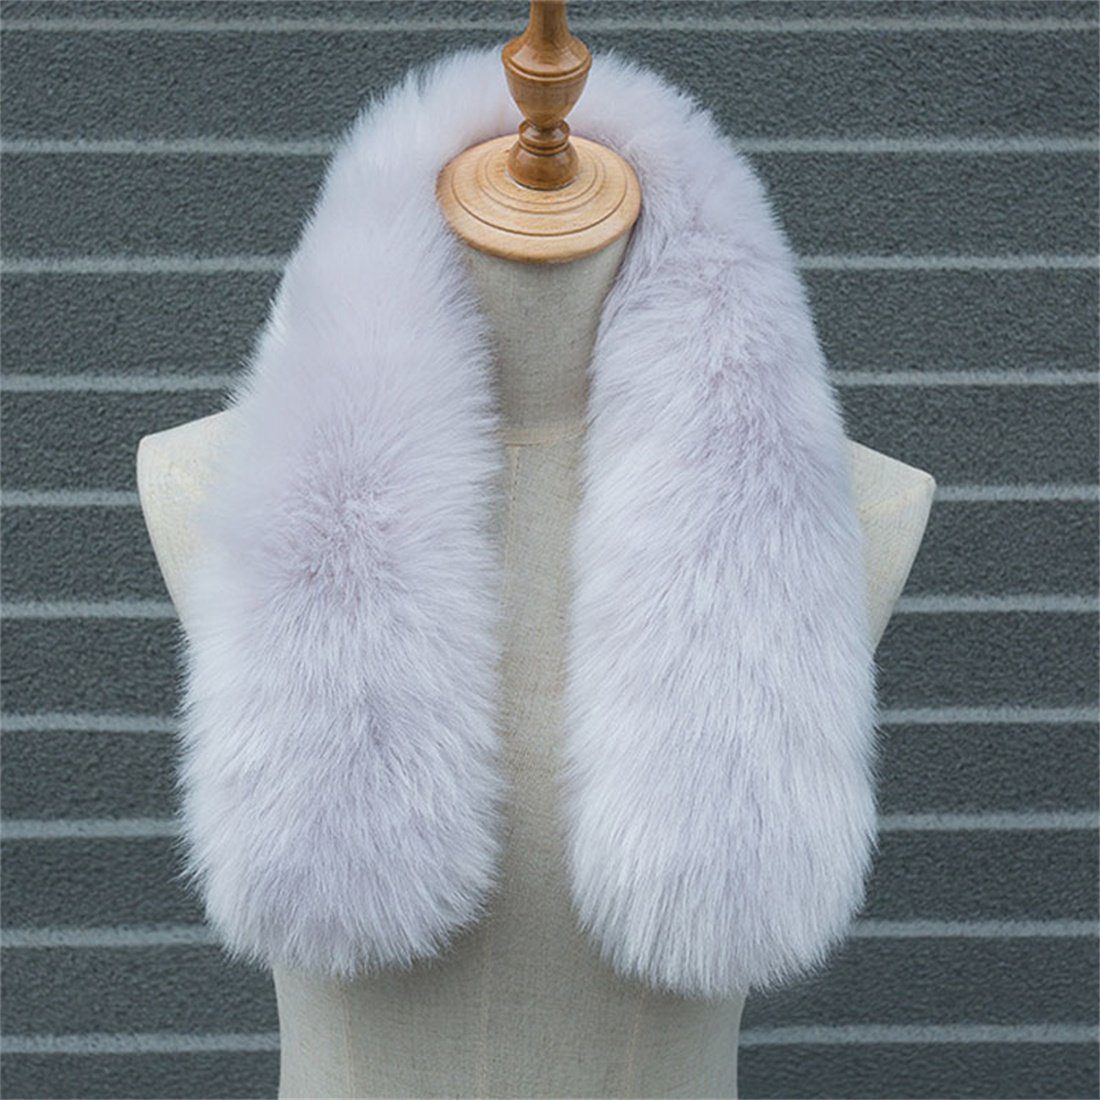 DÖRÖY Modeschal Damen Winter warm verdickt Plüsch Schal,Nachahmung Pelz einfarbigSchal Grau